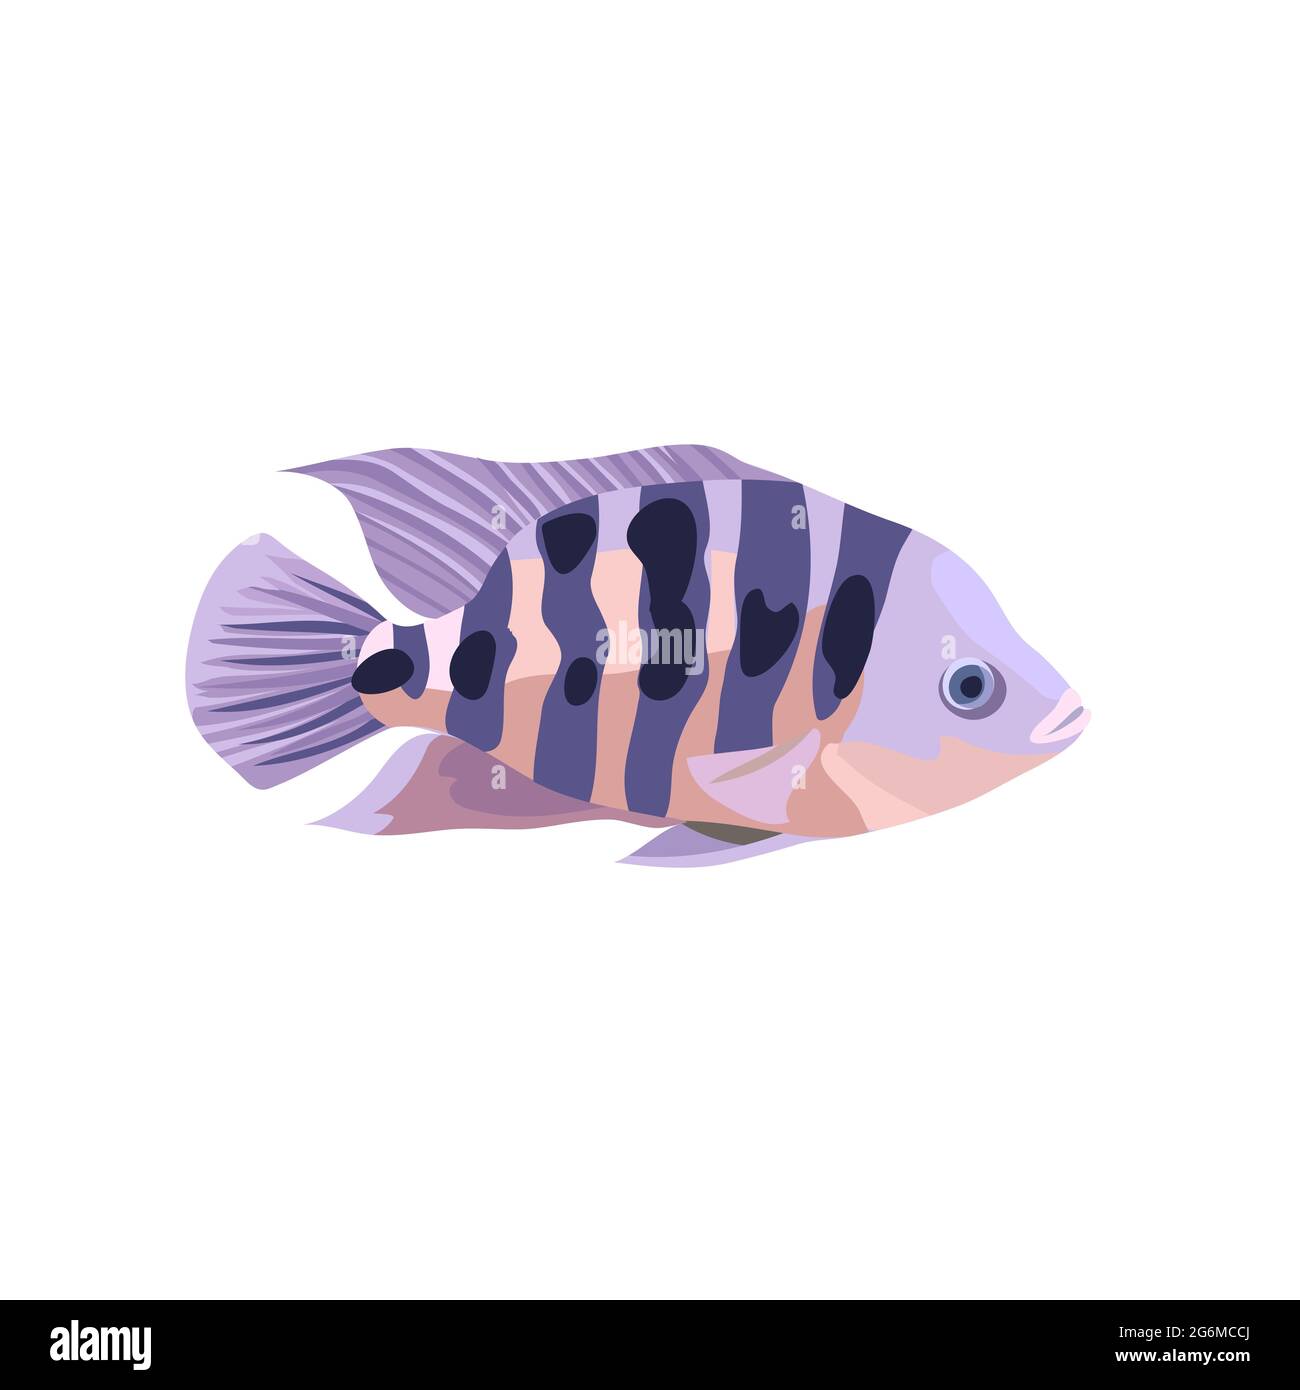 Illustrations de dessins animés de poissons cichlidés isolés sur fond blanc. Illustration de Vecteur